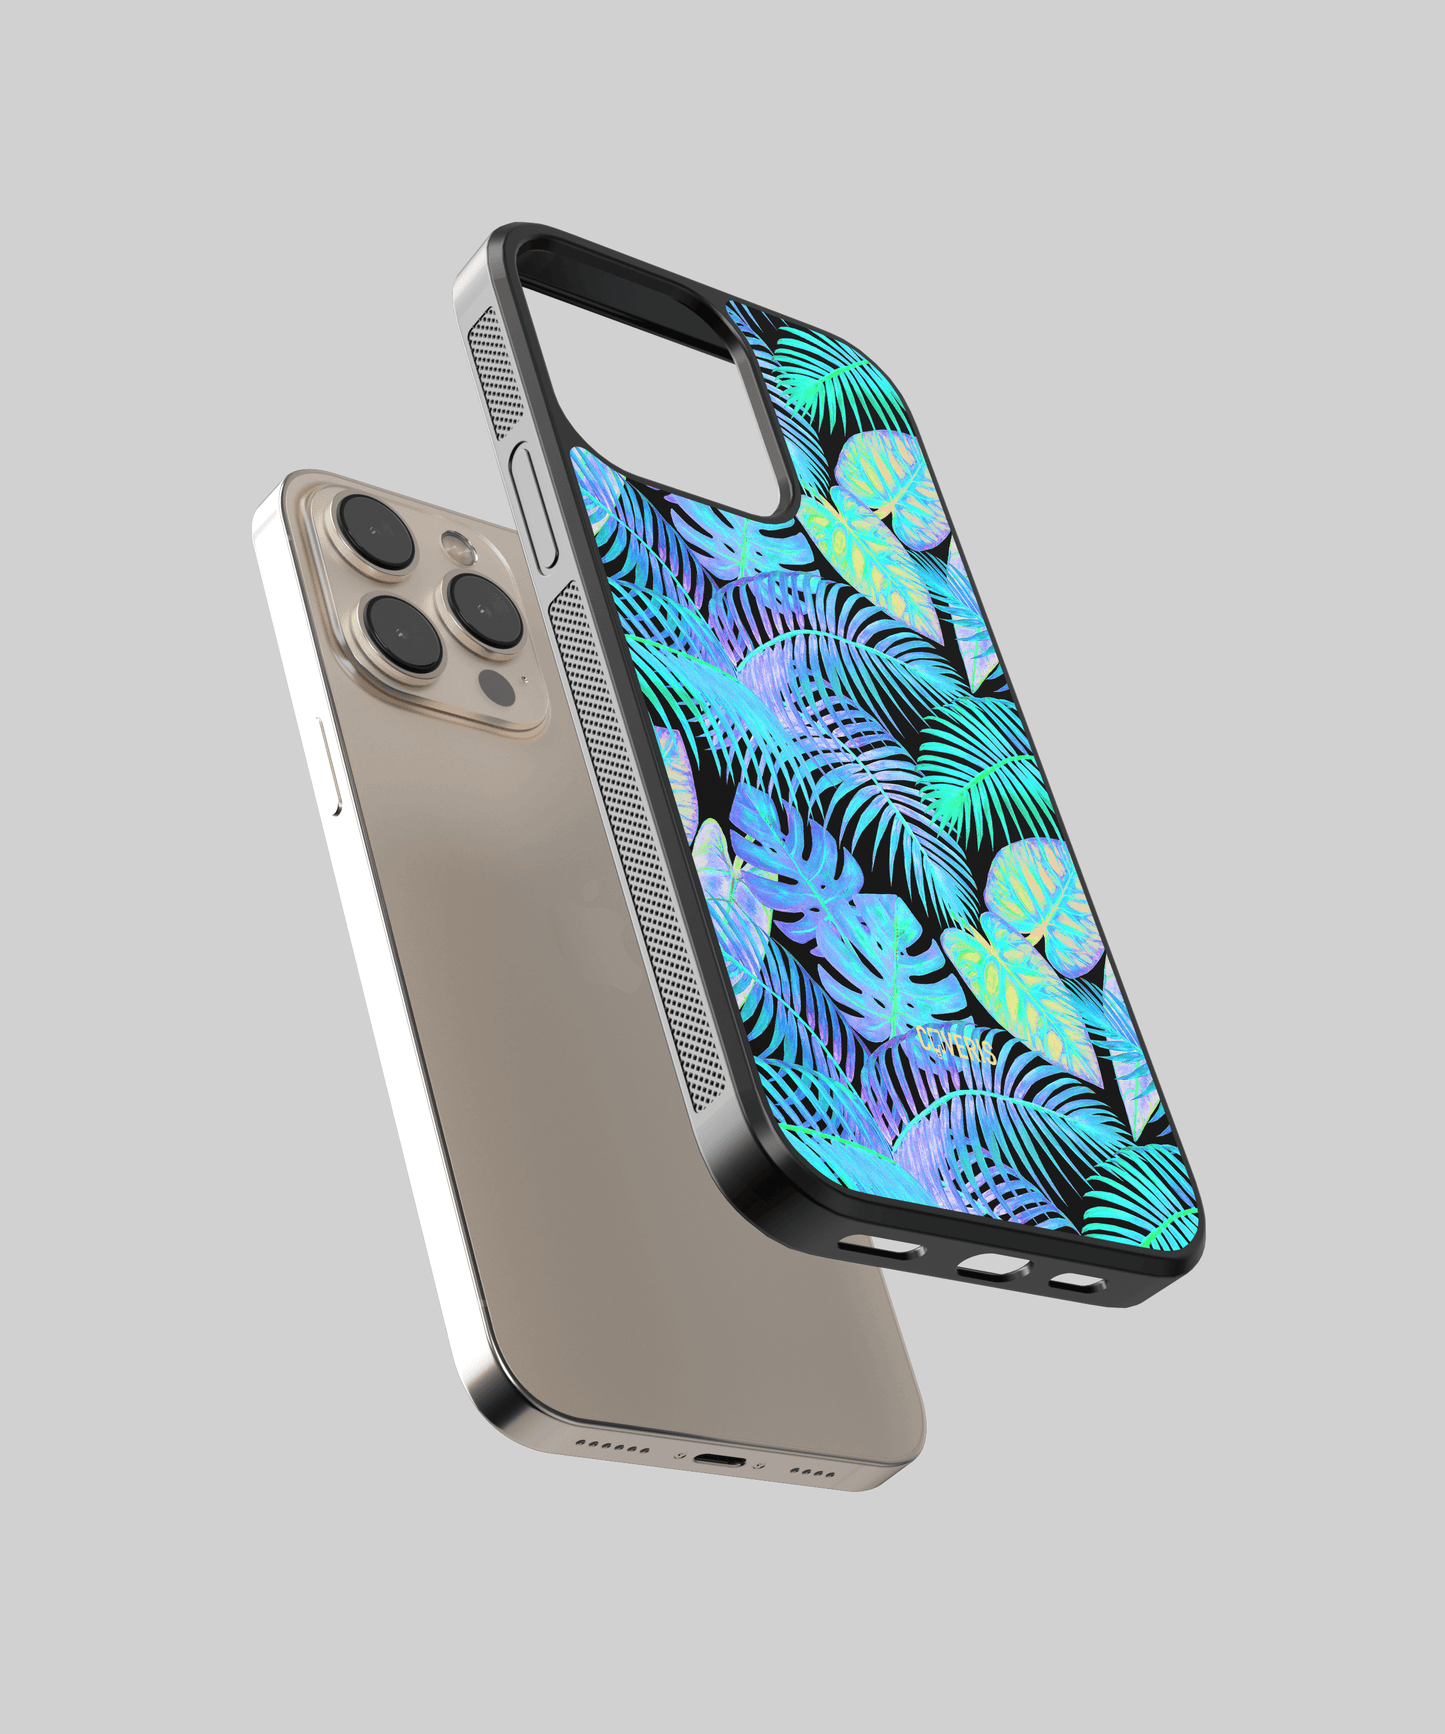 Tropic - Samsung Galaxy A21 phone case